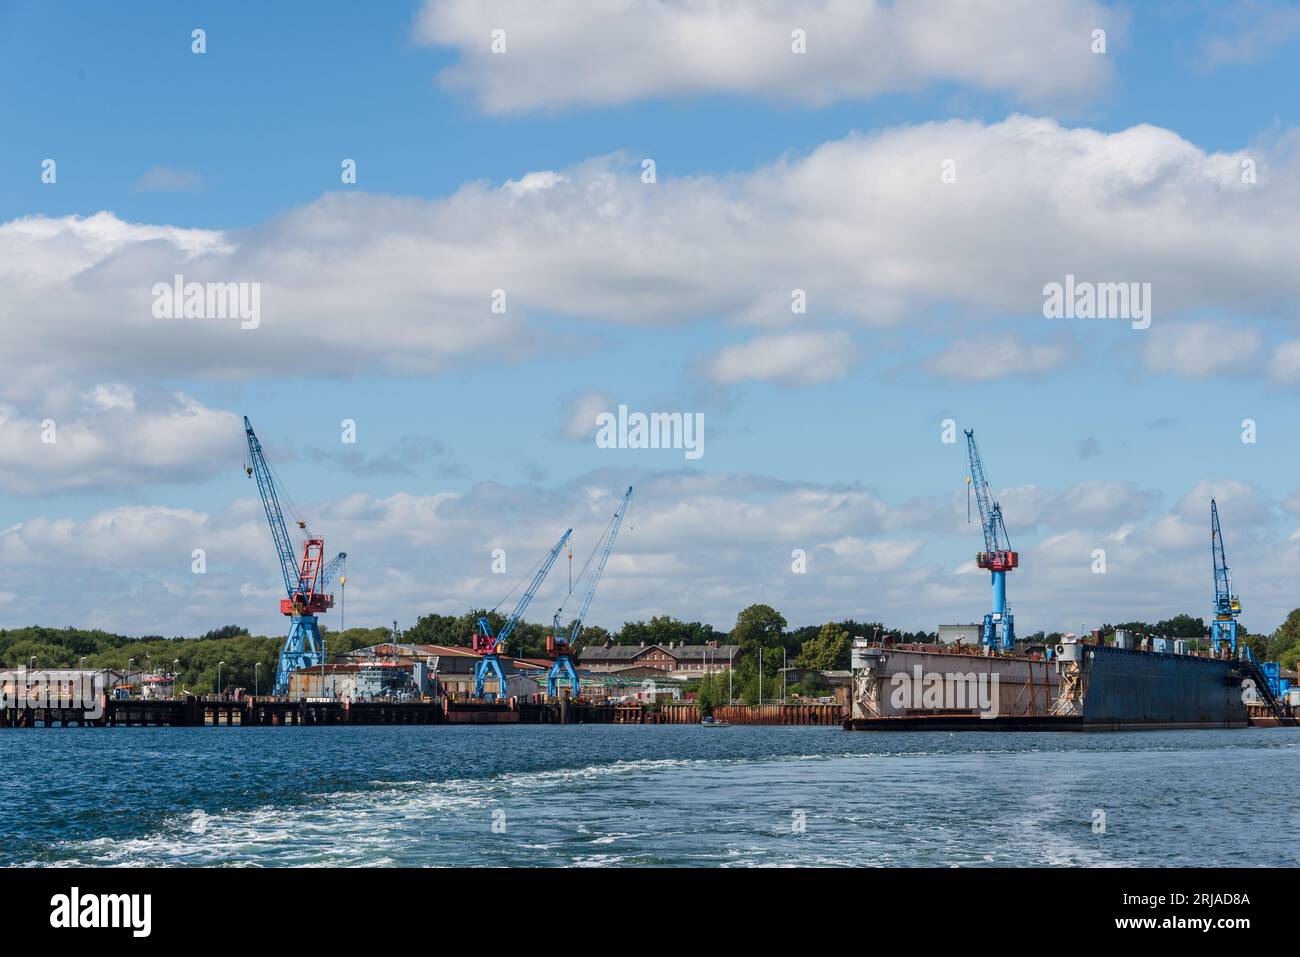 Ein Werftgelände mit Hafenkränen und einem Schwimmdock in Friedrichsort an der Kieler Förde Stock Photo